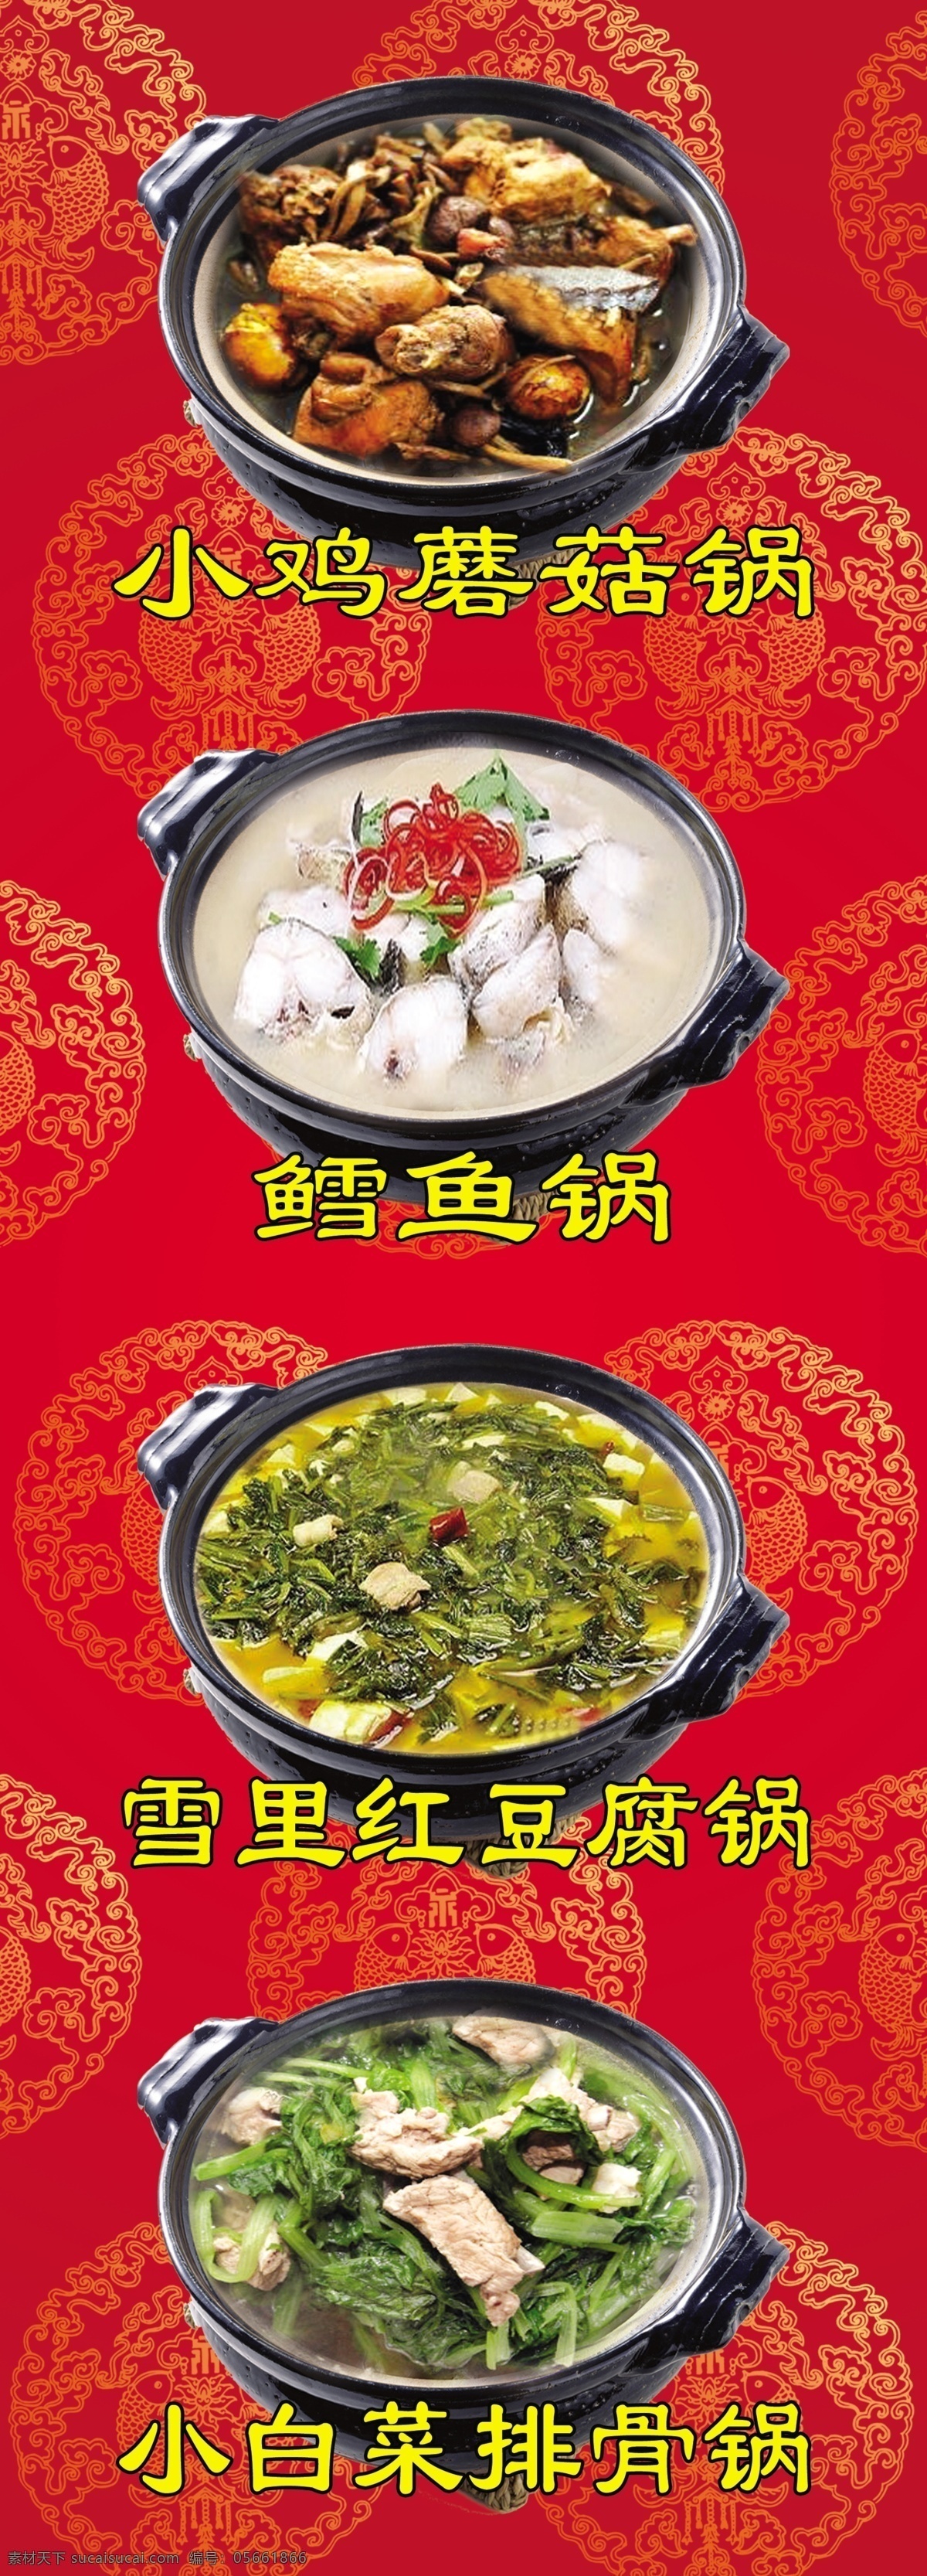 砂锅 小鸡蘑菇锅 鳕鱼锅 雪里红豆腐锅 小白菜排骨锅 菜肴